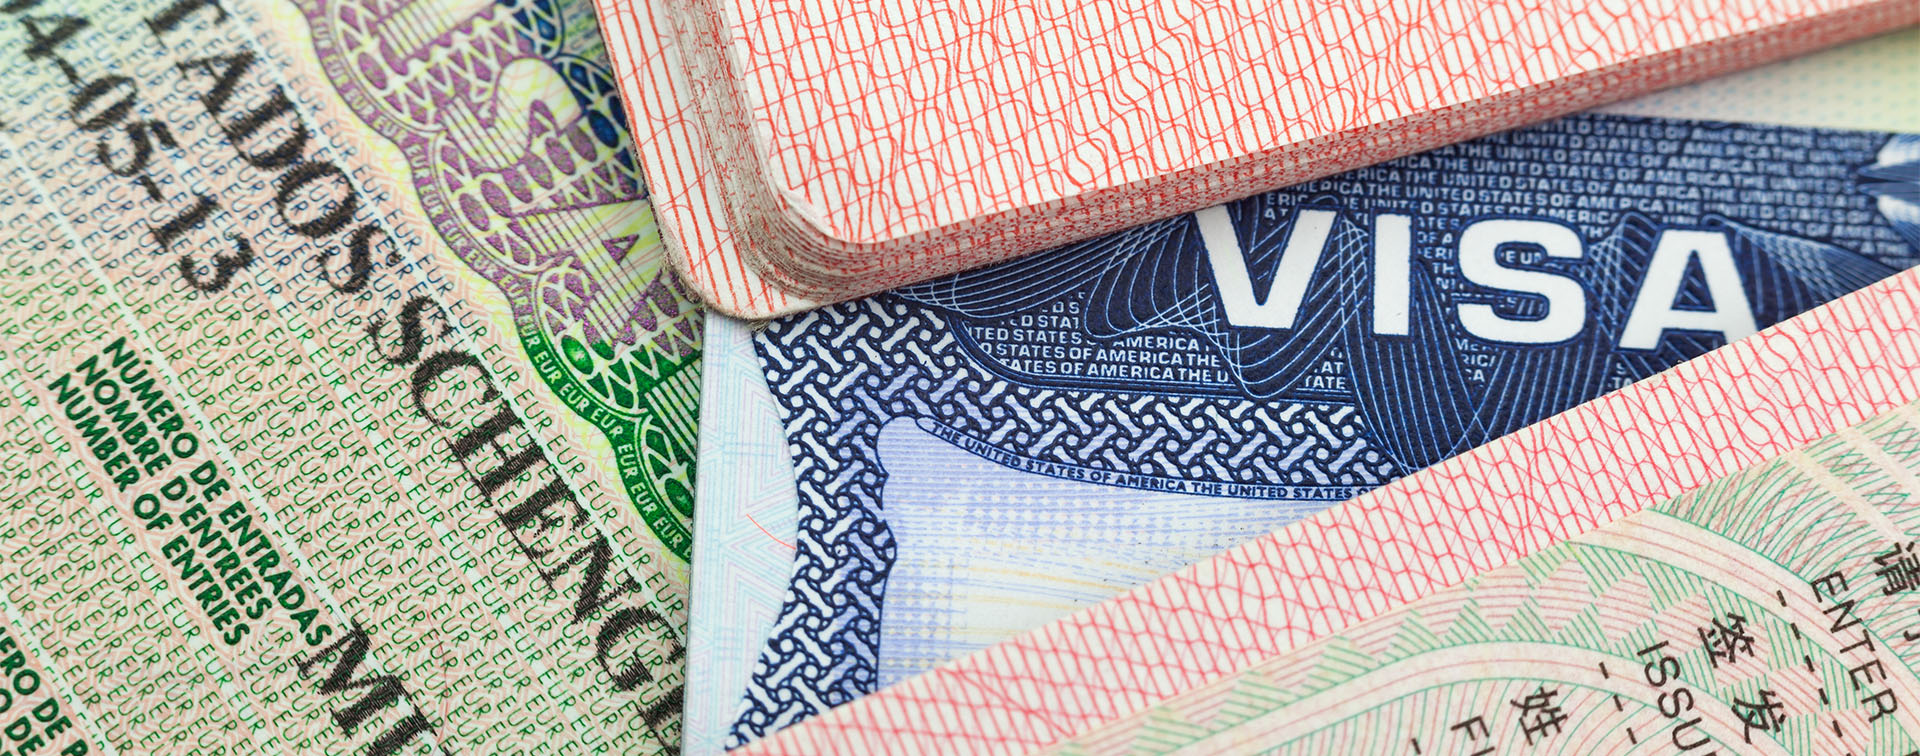 Chinese, US, and European Schengen visas in passports